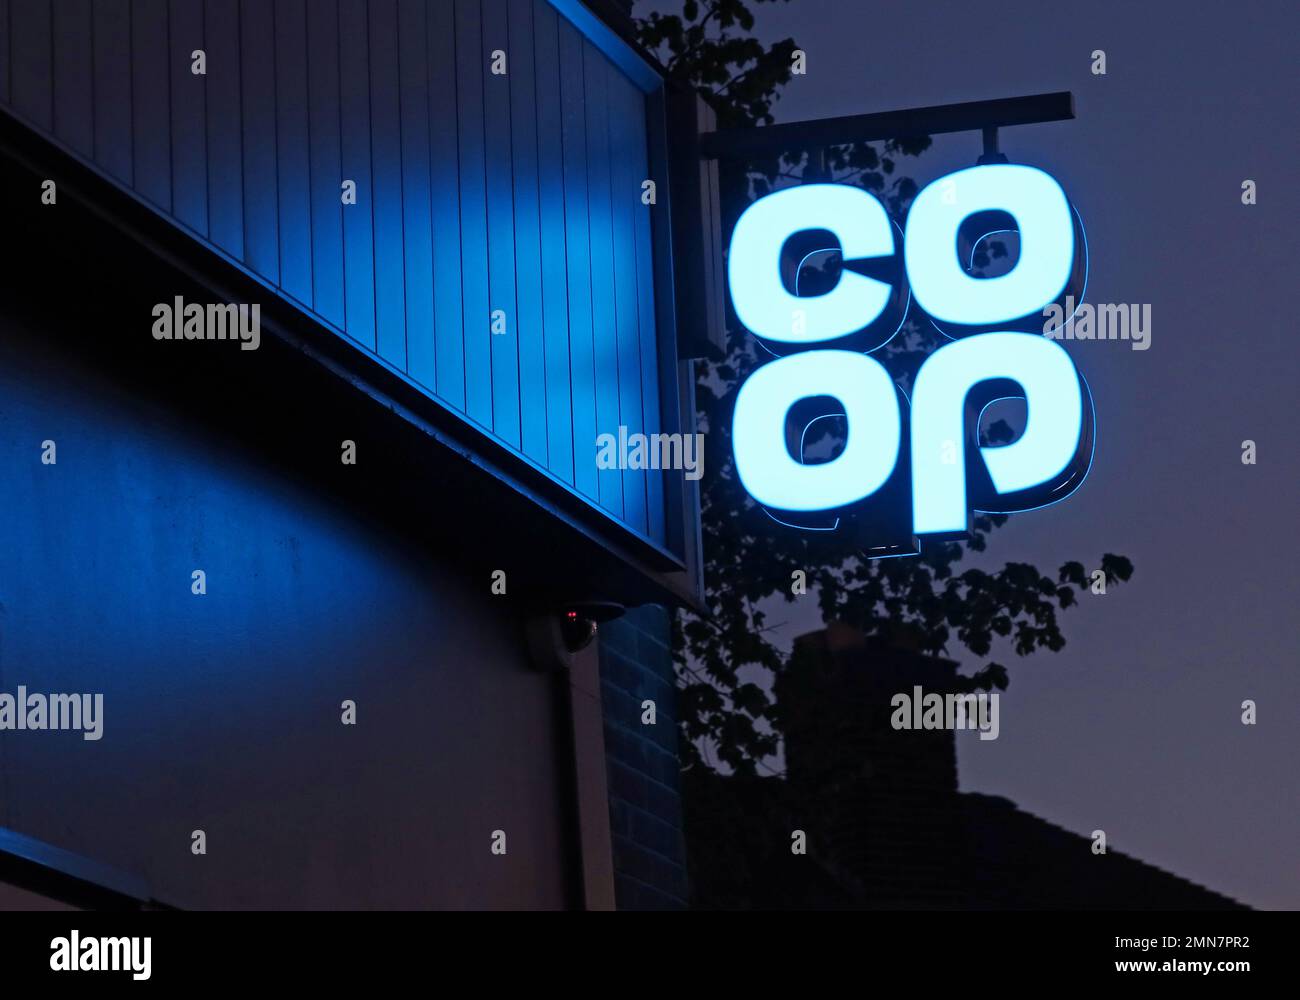 Panneau Blue CO-OP, supermarché de proximité, 156 Knutsford Road, Grappenhall, Warrington, Cheshire, Angleterre, Royaume-Uni, WA4 2QU Banque D'Images